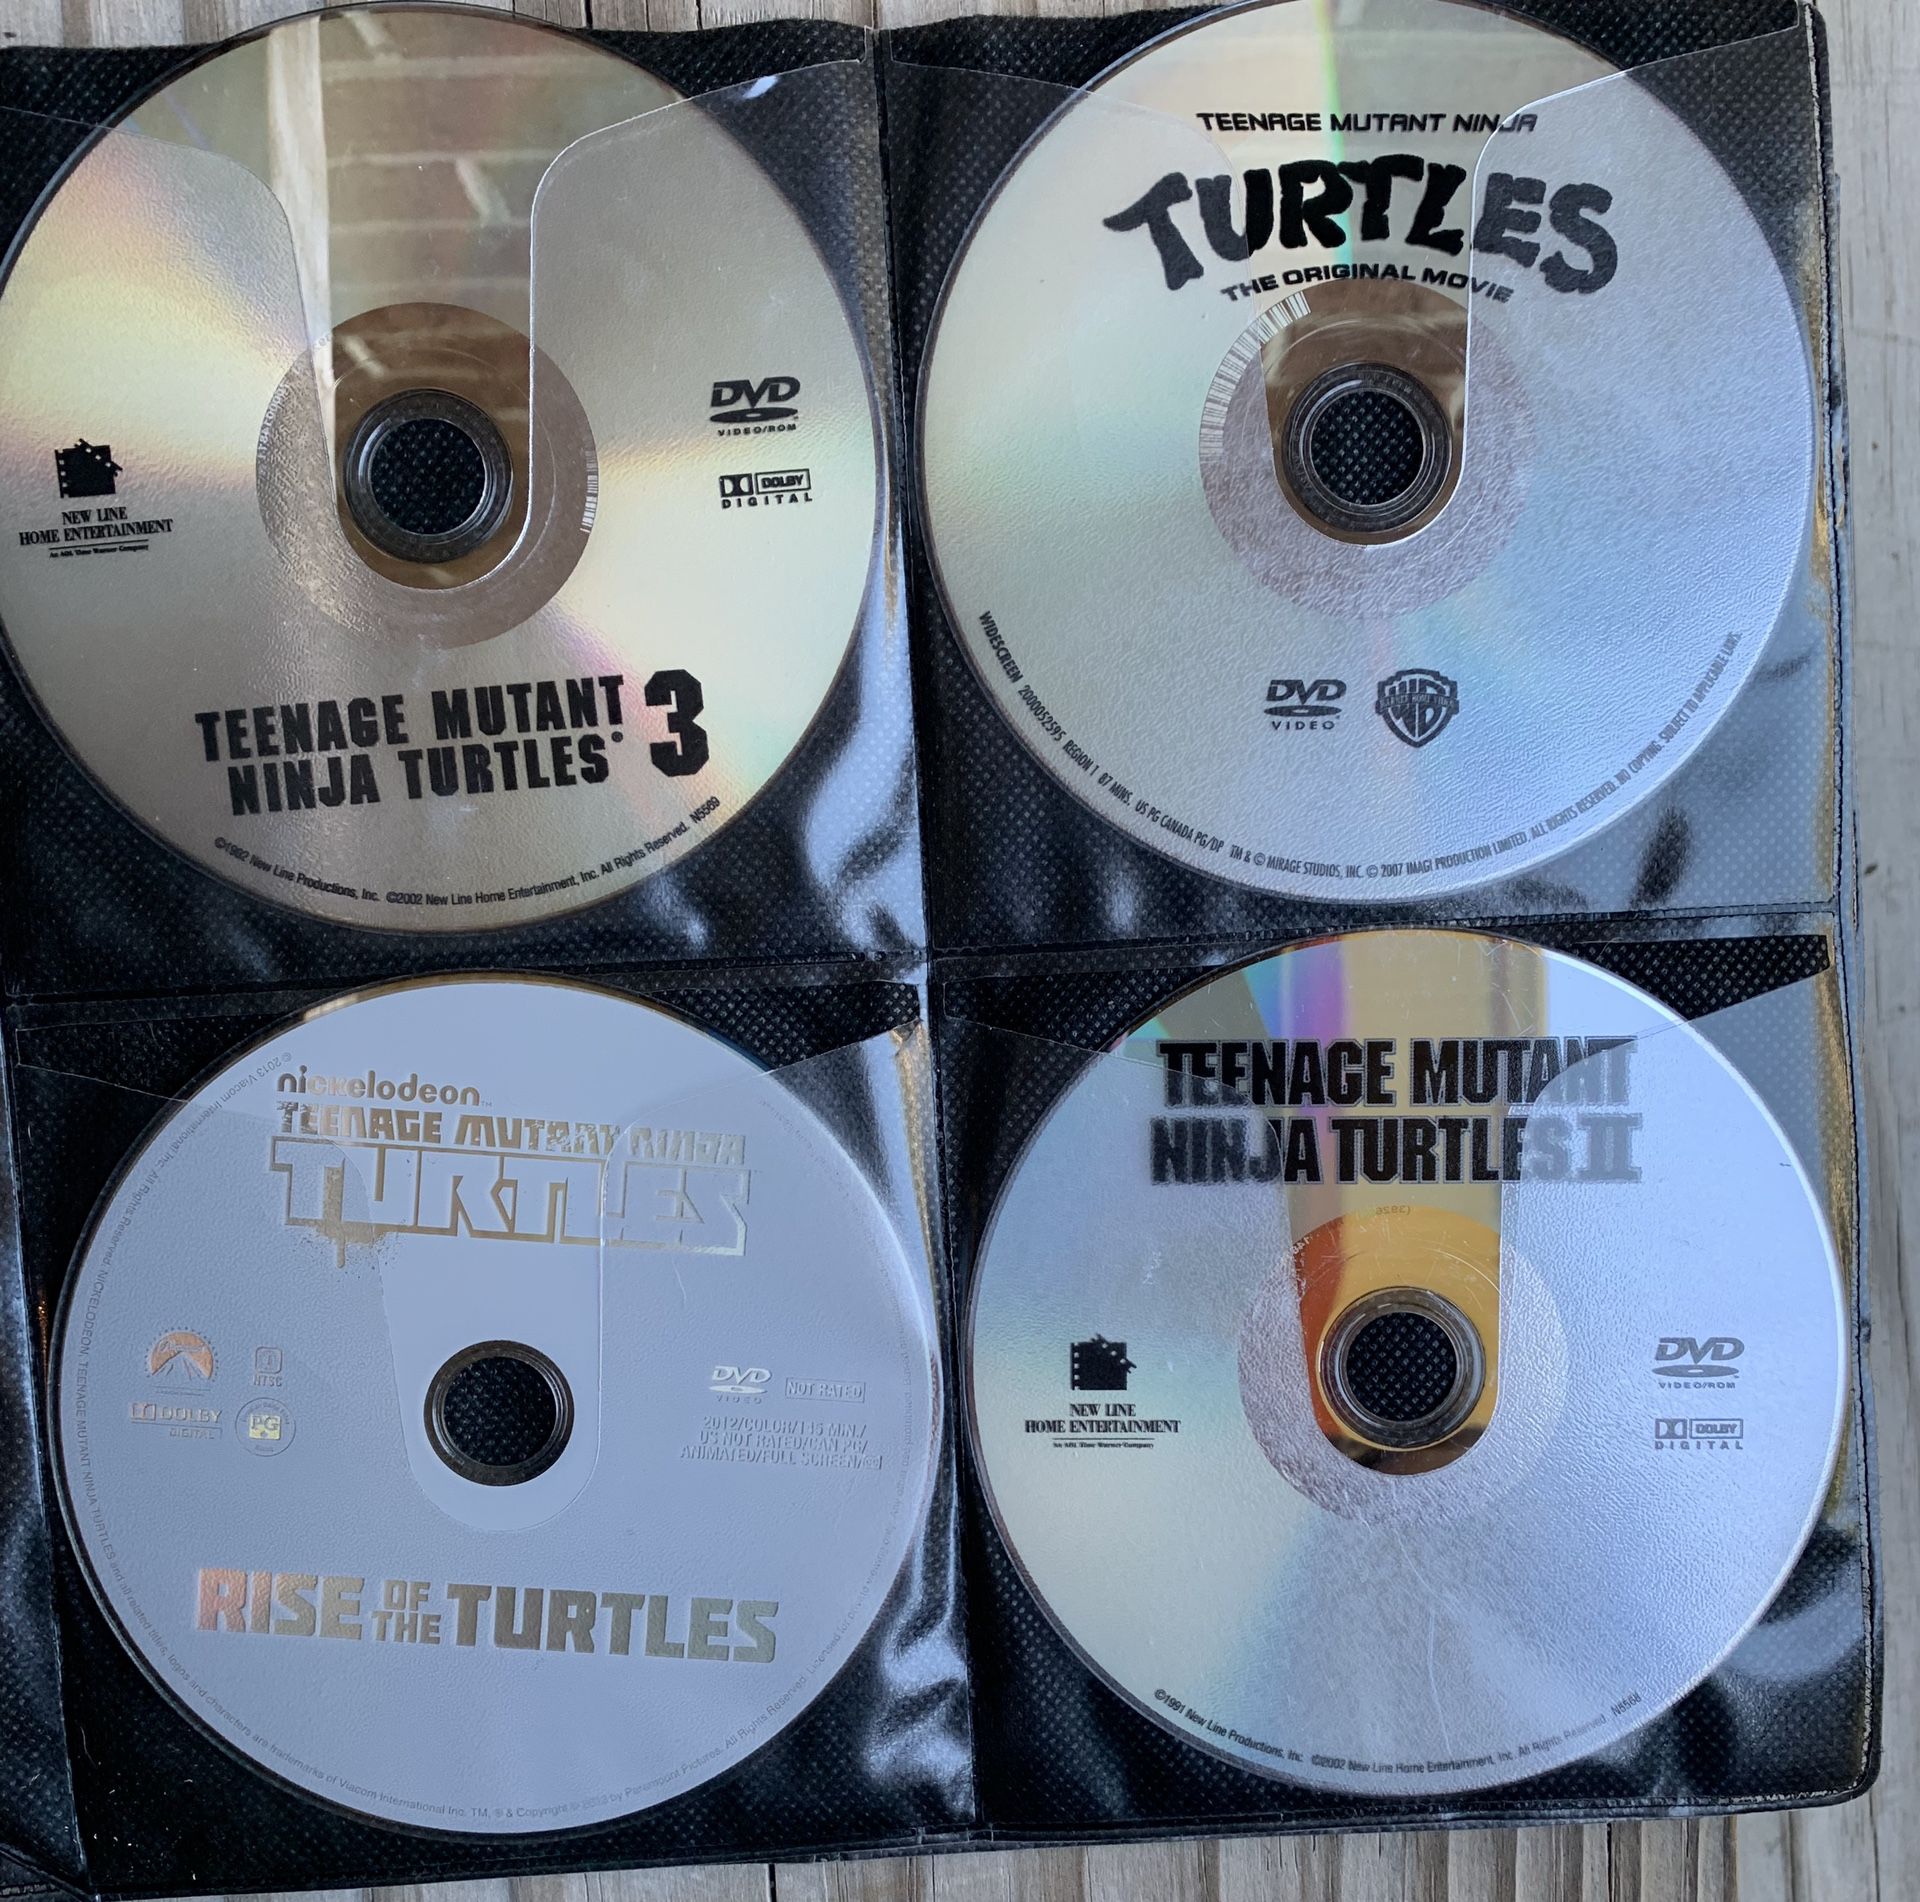 7 TEENAGE MUTANT NINJA TURTLES DVD MOVIES! Selling as a group~ READ BELOW FOR MORE SAVINGS!!